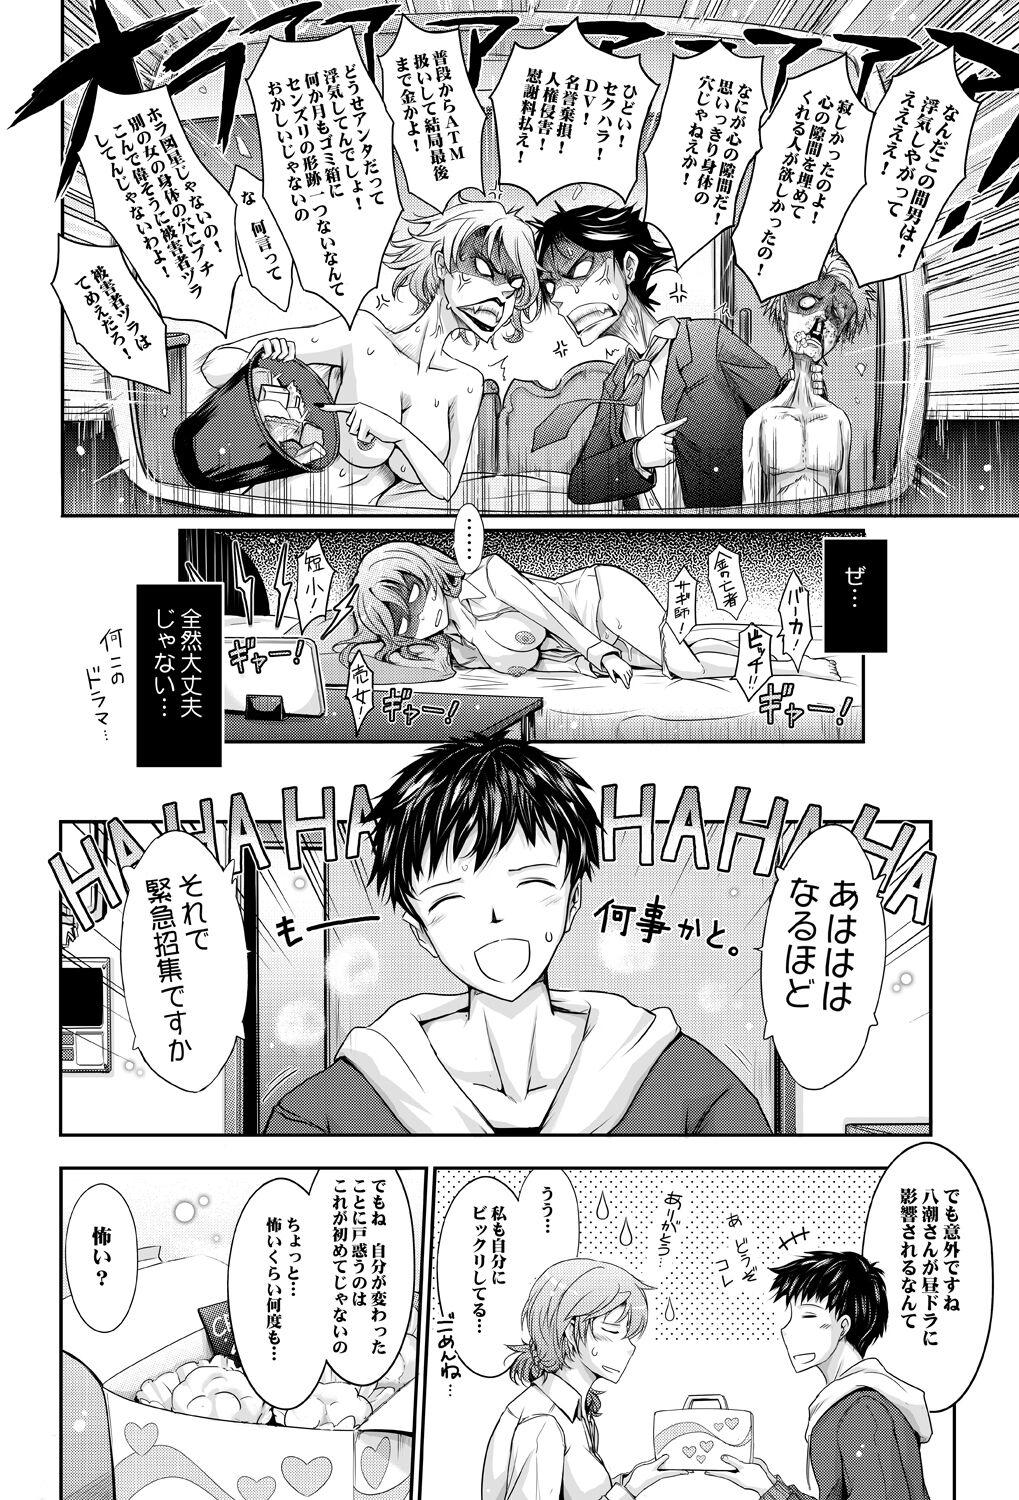 Whipping Amaku Iyagaru Kanojo no Chijou Episode 3 - Original Cocksuckers - Page 10